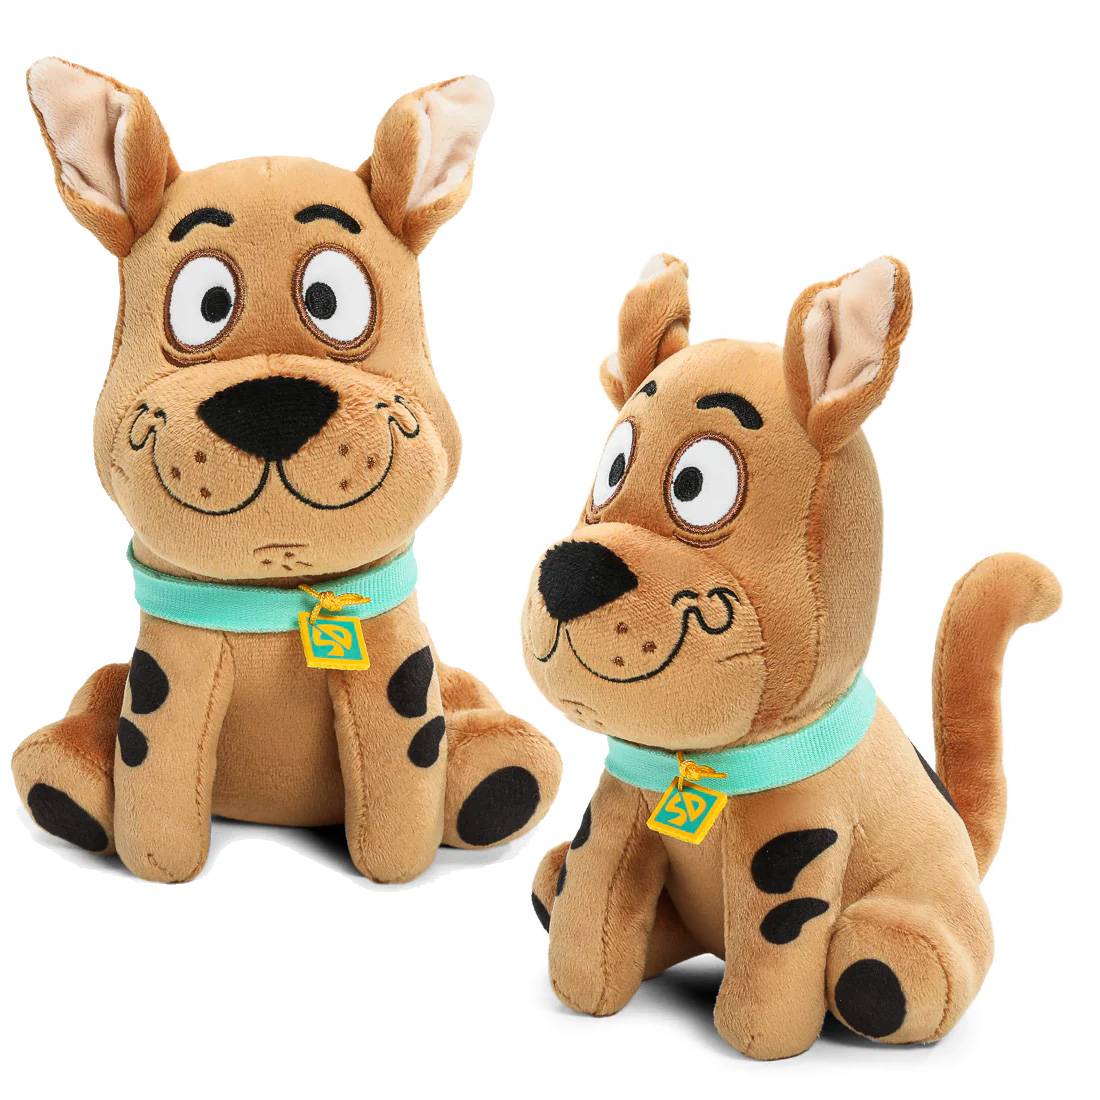 Bonecos de Pelúcia Scooby-Doo Phunny com Fred, Velma, Daphne, Salsicha e Scooby (Kidrobot)